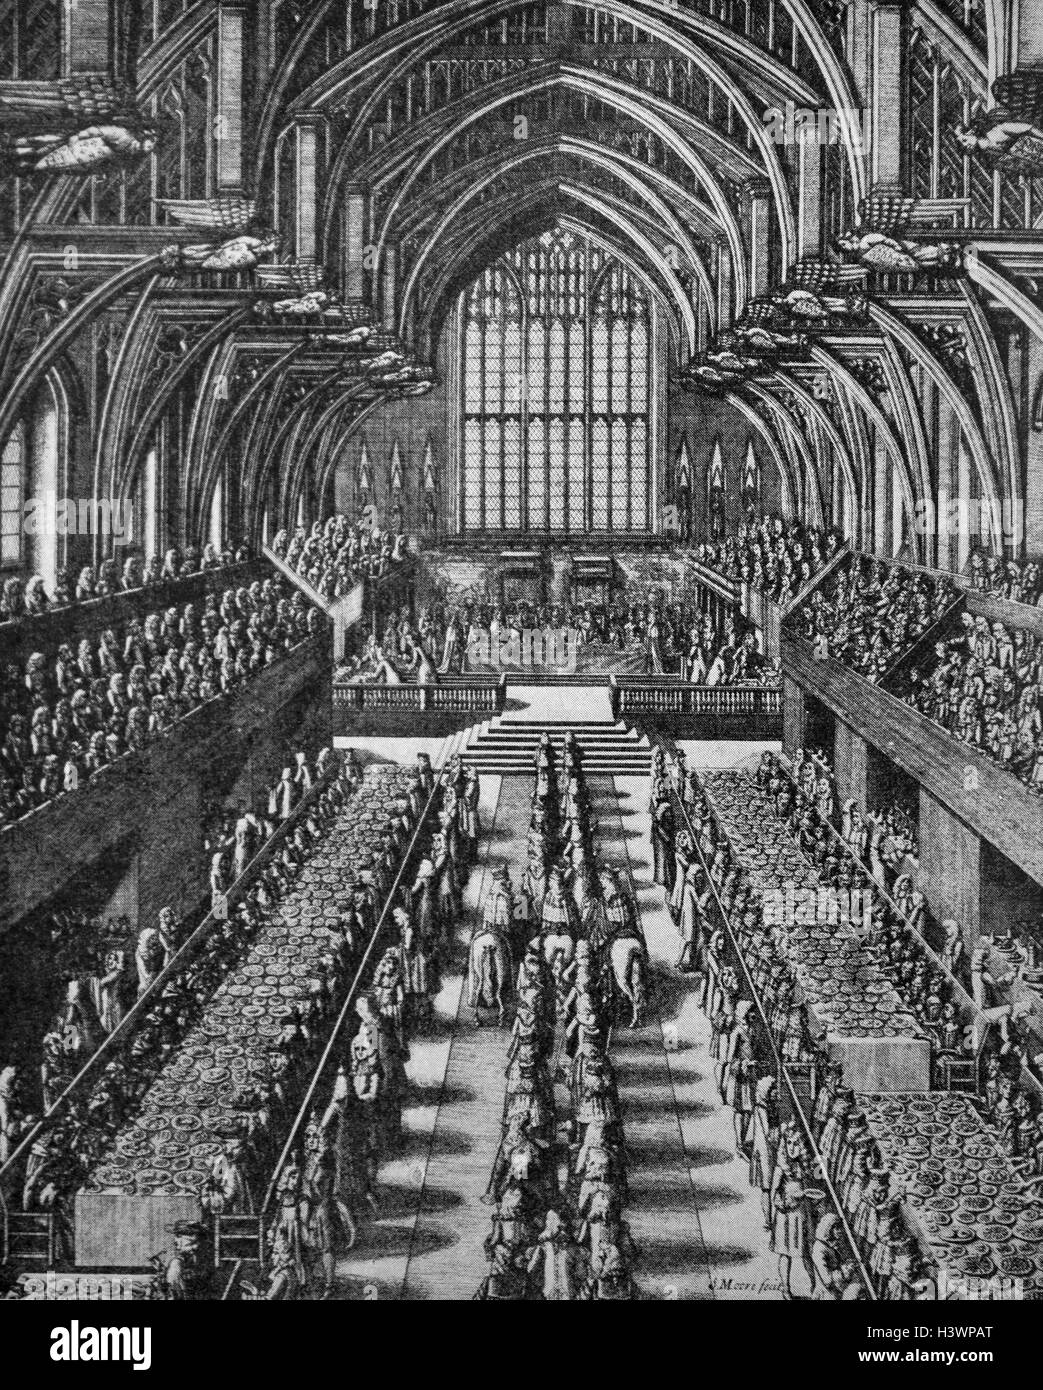 Grabado representando un banquete en Westminster Hall después de la coronación del rey Jaime II (1633-1701) rey de Inglaterra e Irlanda. Fecha Siglo xvii Foto de stock